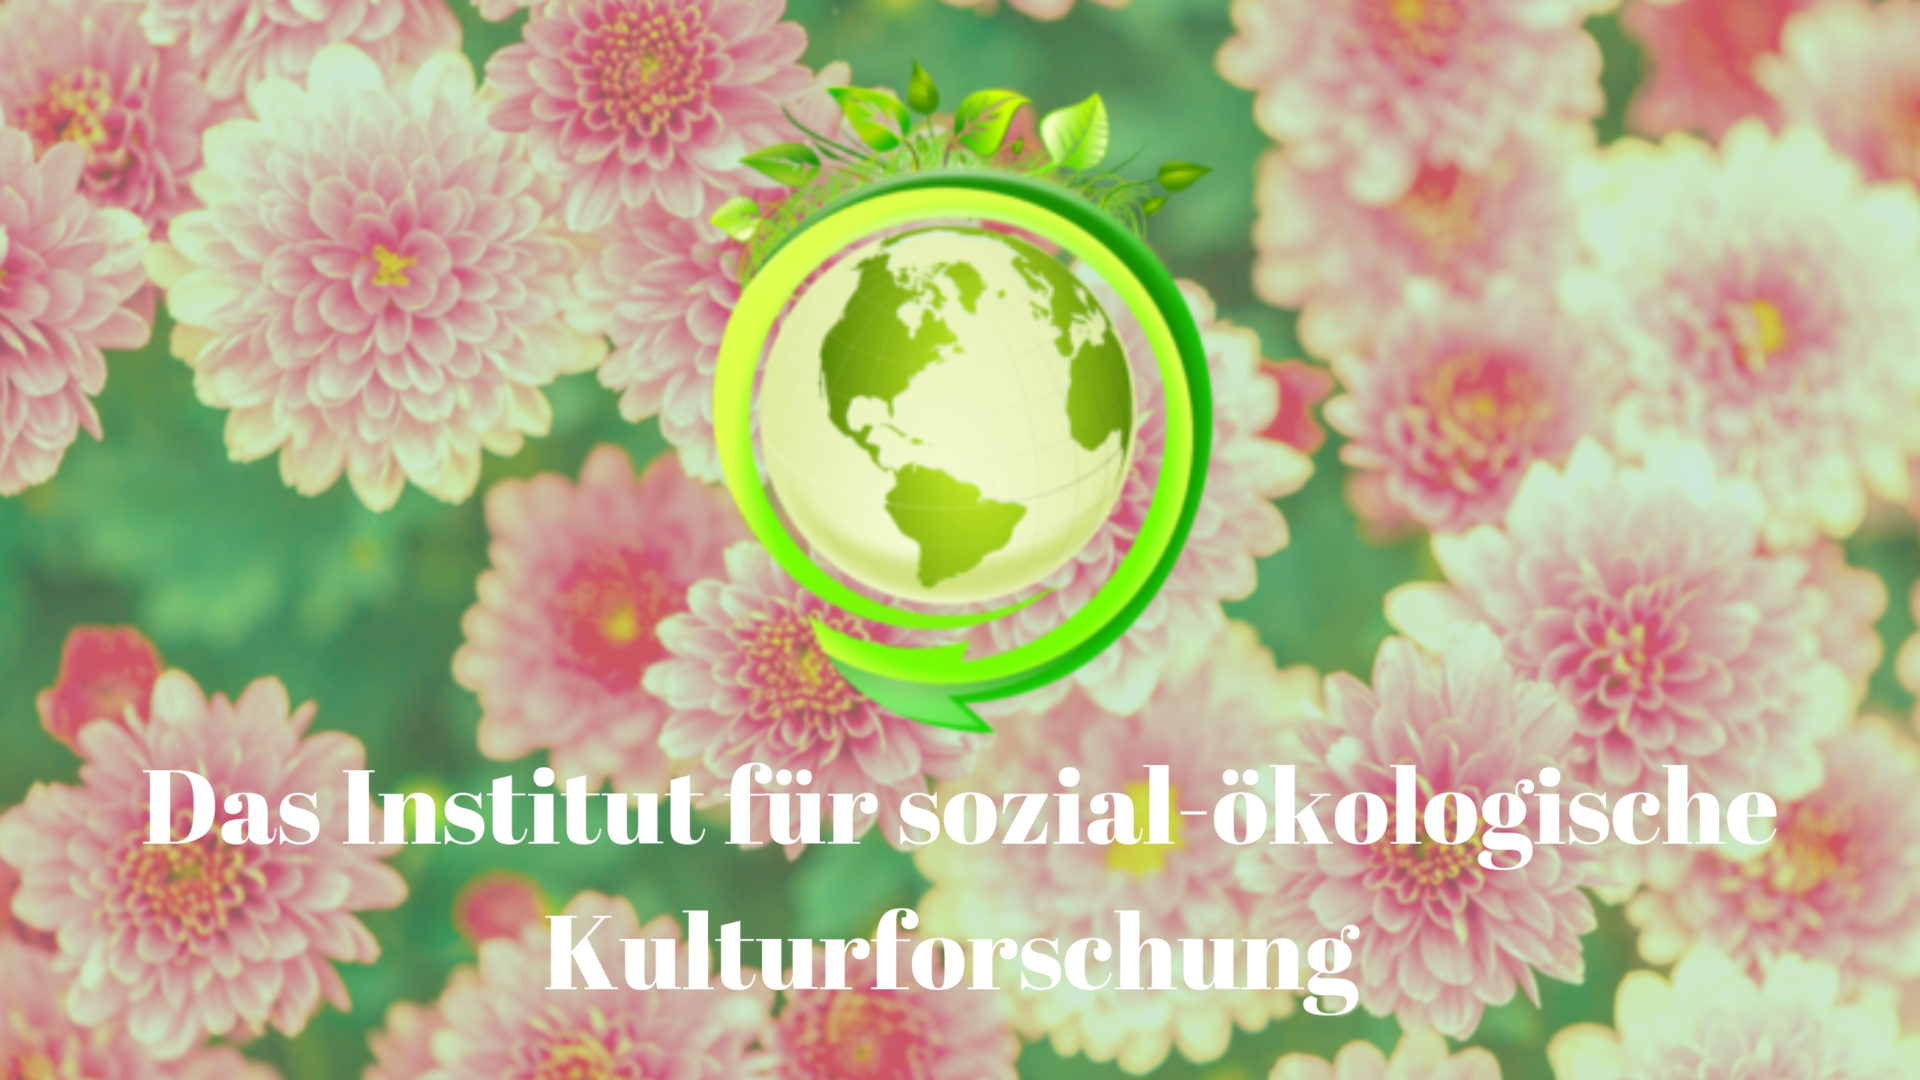 Das Institut für sozial-ökologische Kulturforschung